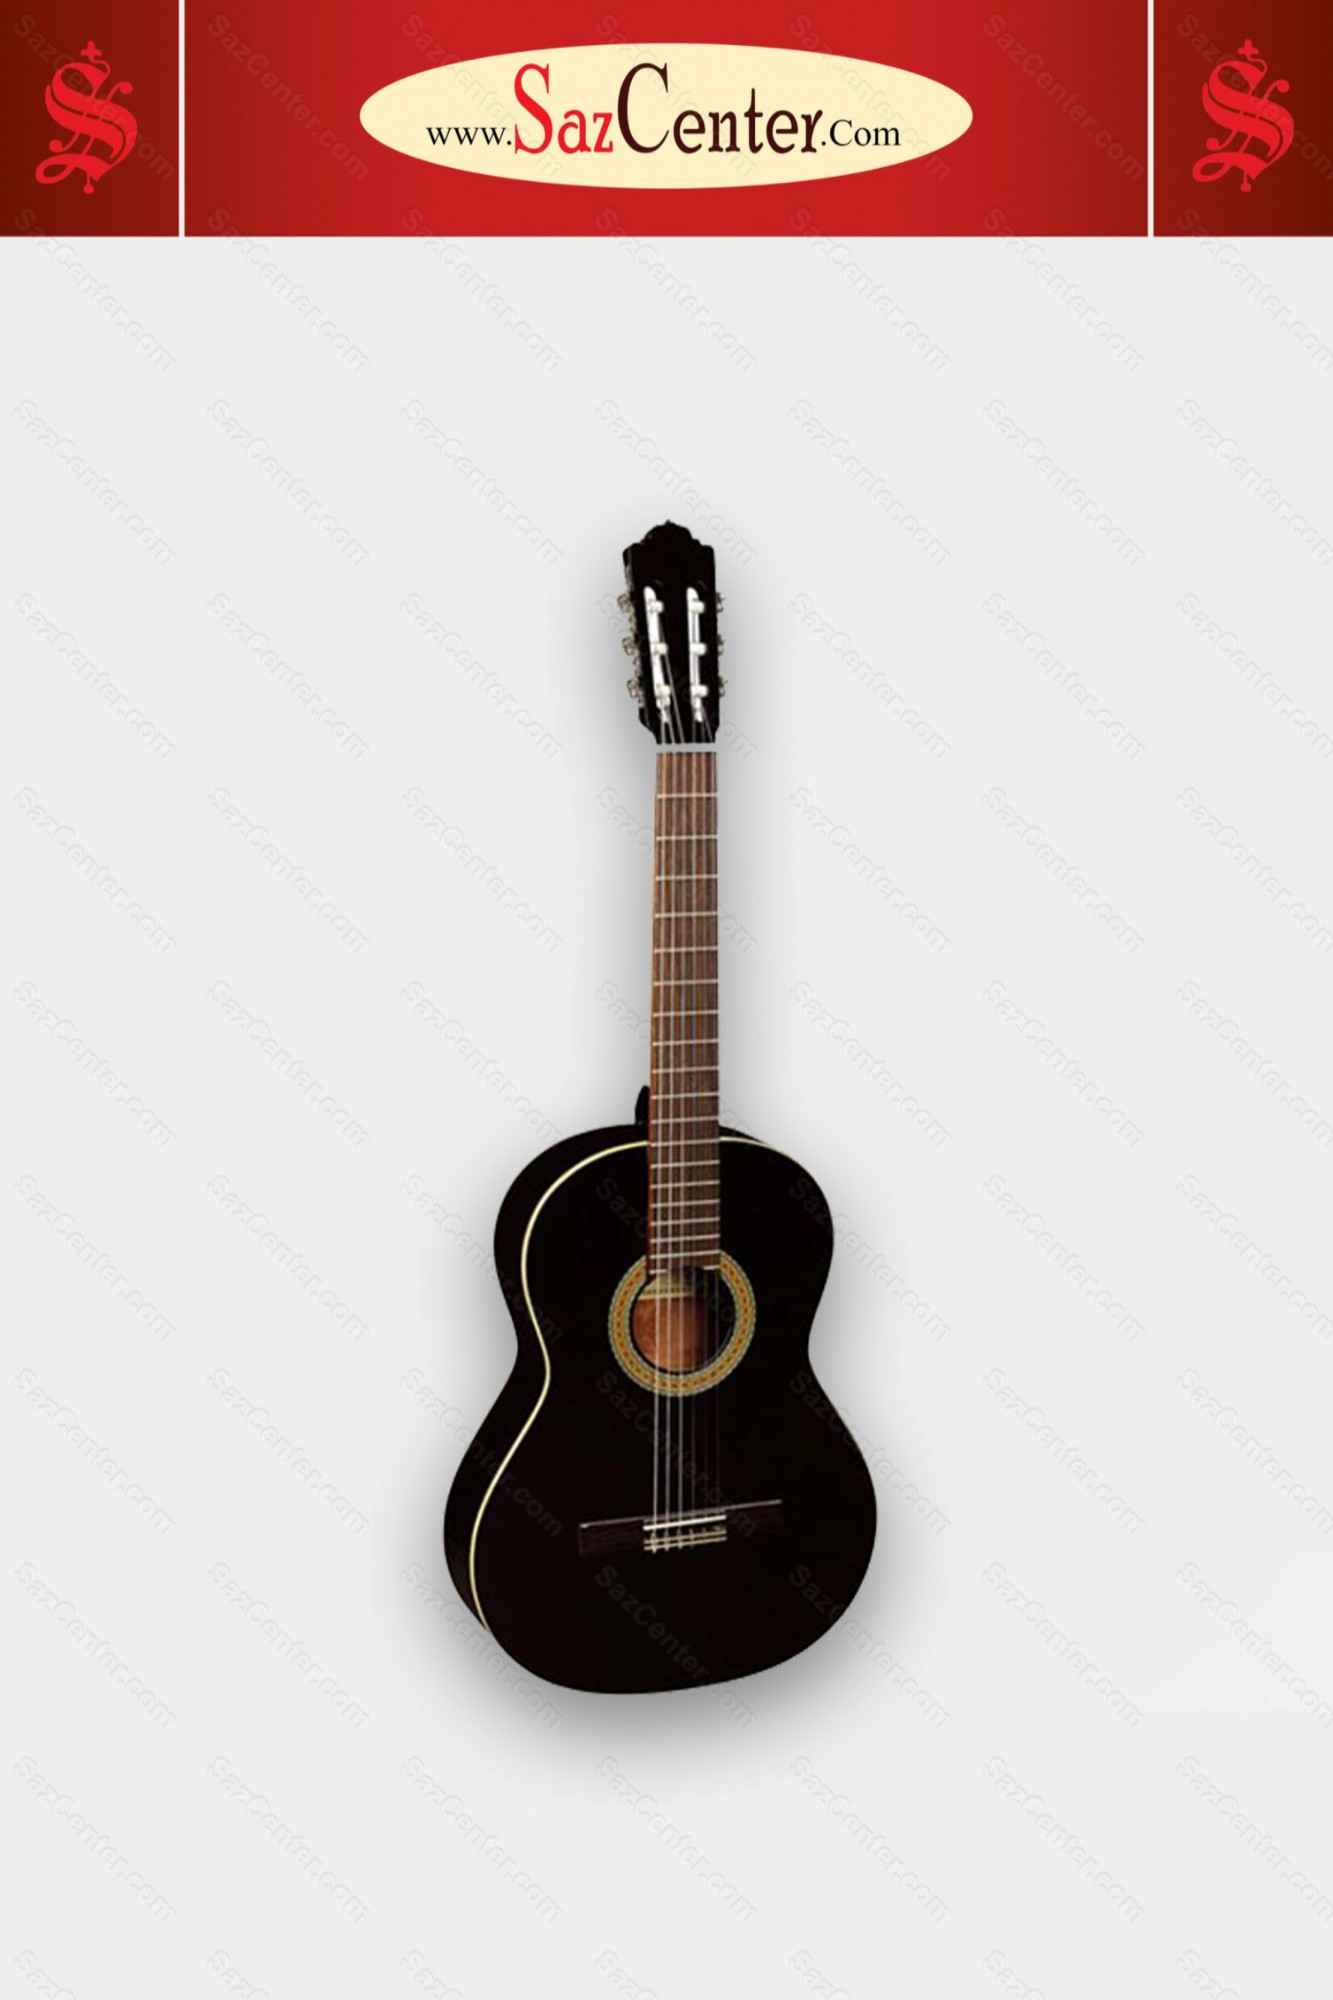 عکس گیتار کلاسیک با قیمت